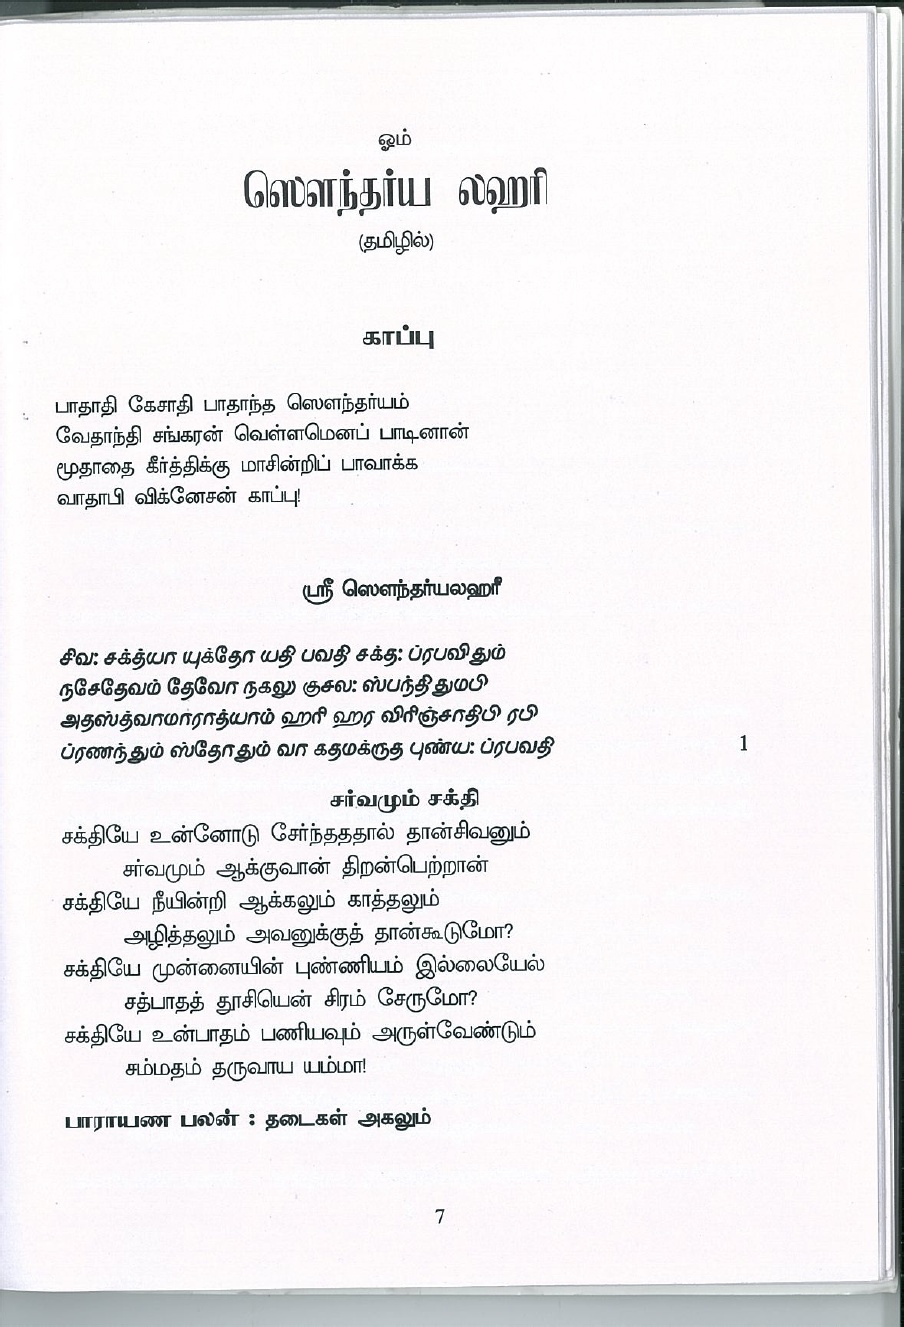 Soundarya lahari - Tamil Translation